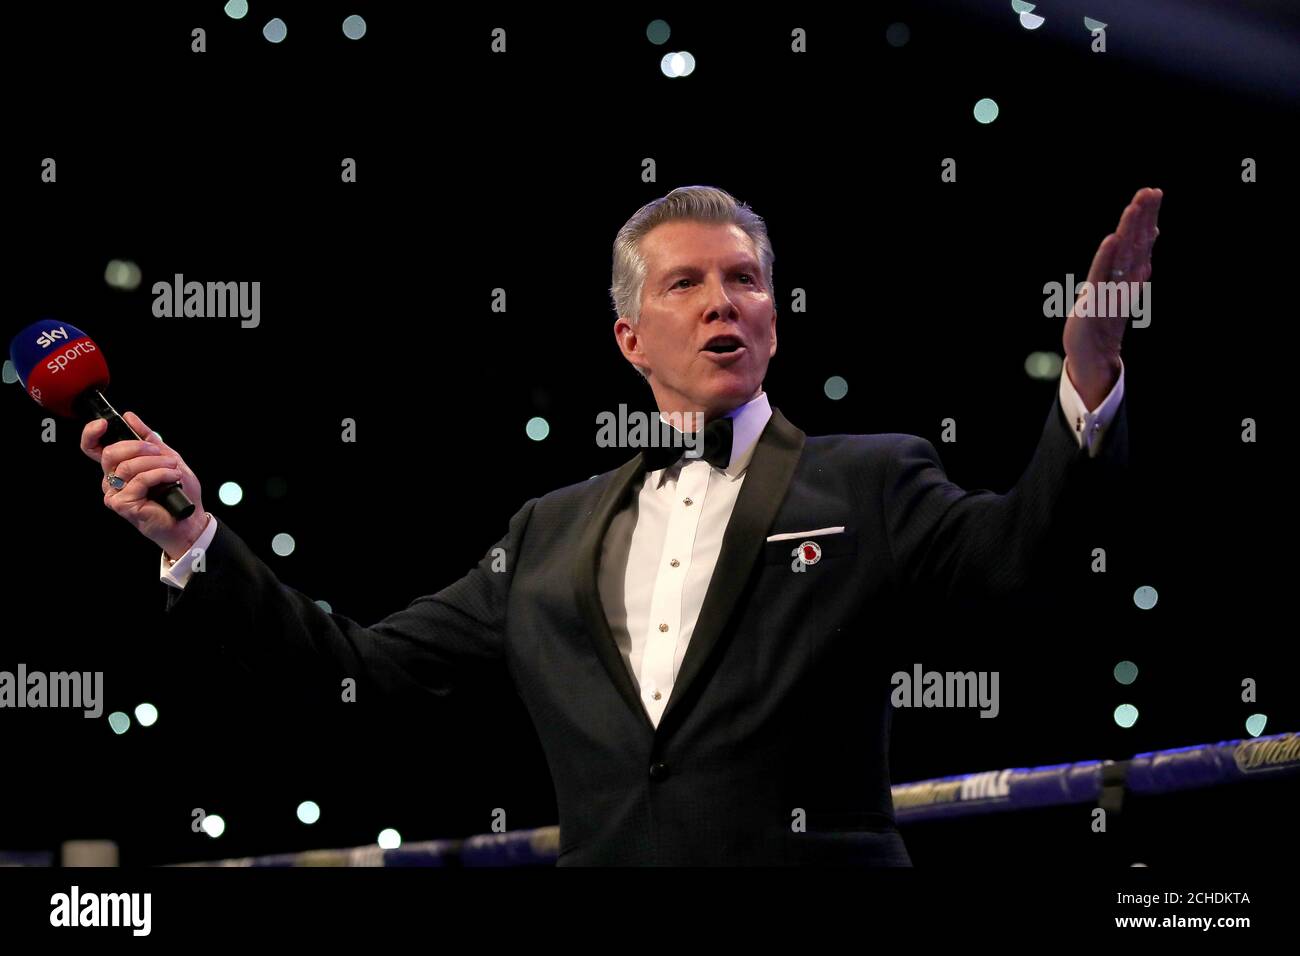 L'annunciatore dell'anello Michael buffer prima dell'evento principale alla Manchester Arena. Foto Stock